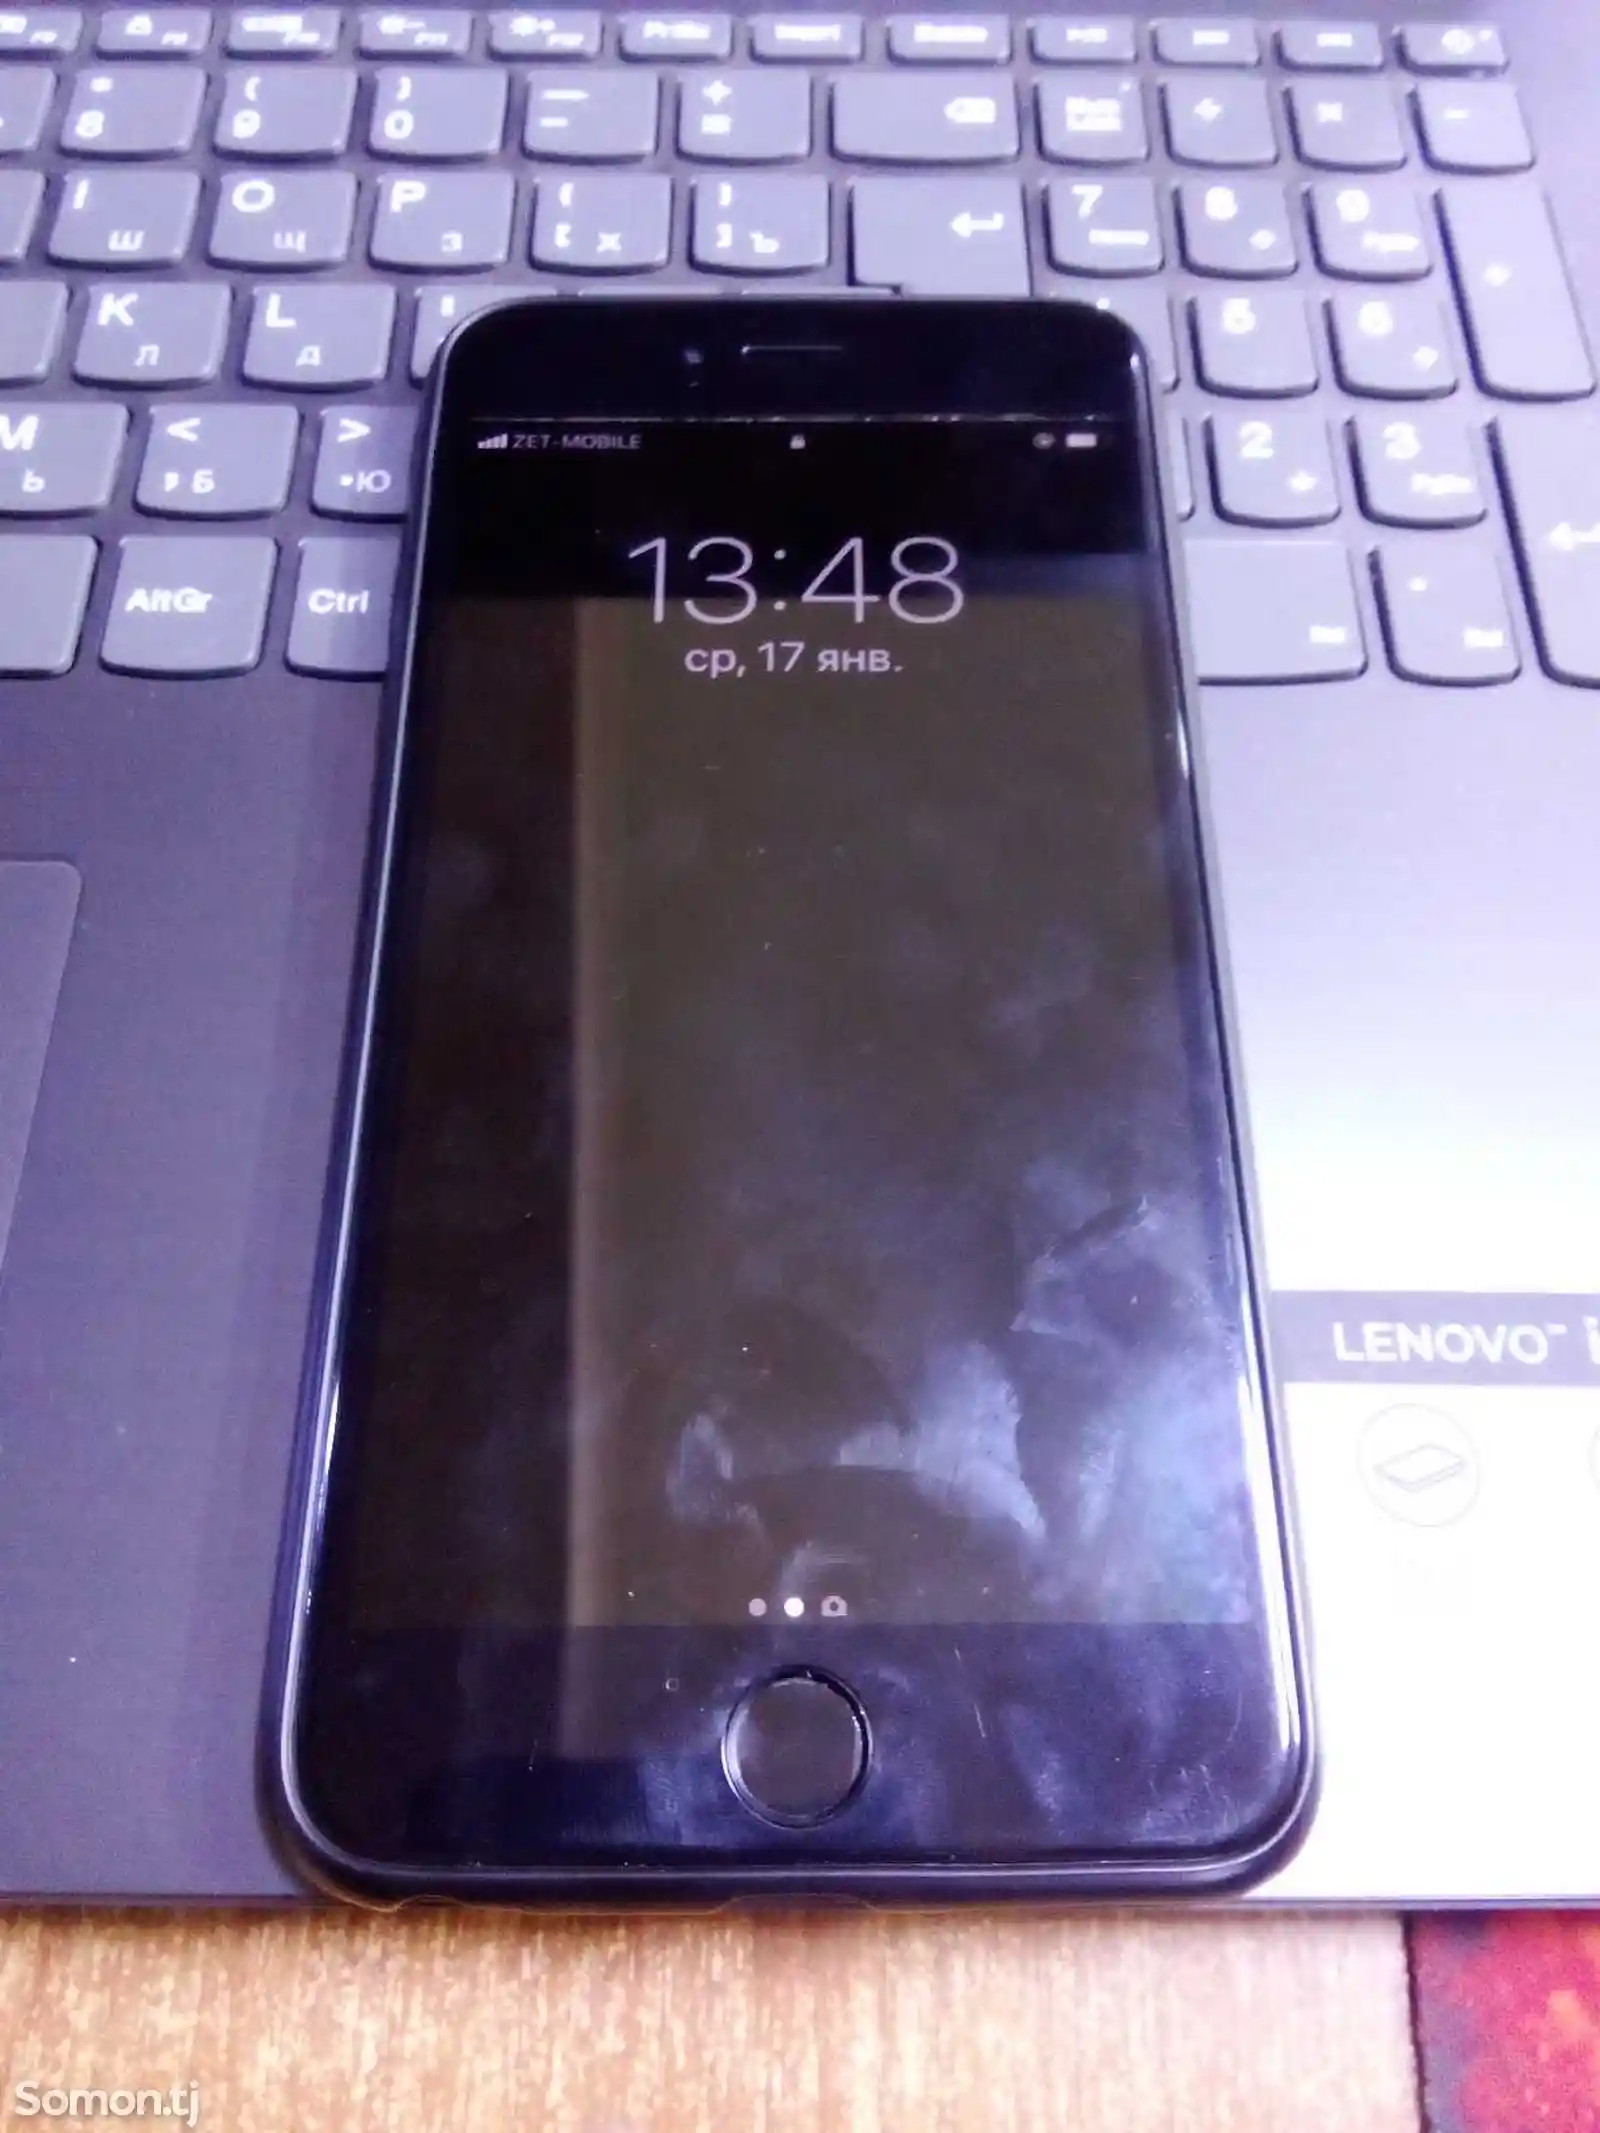 Apple iPhone 6 plus, 16 gb-2